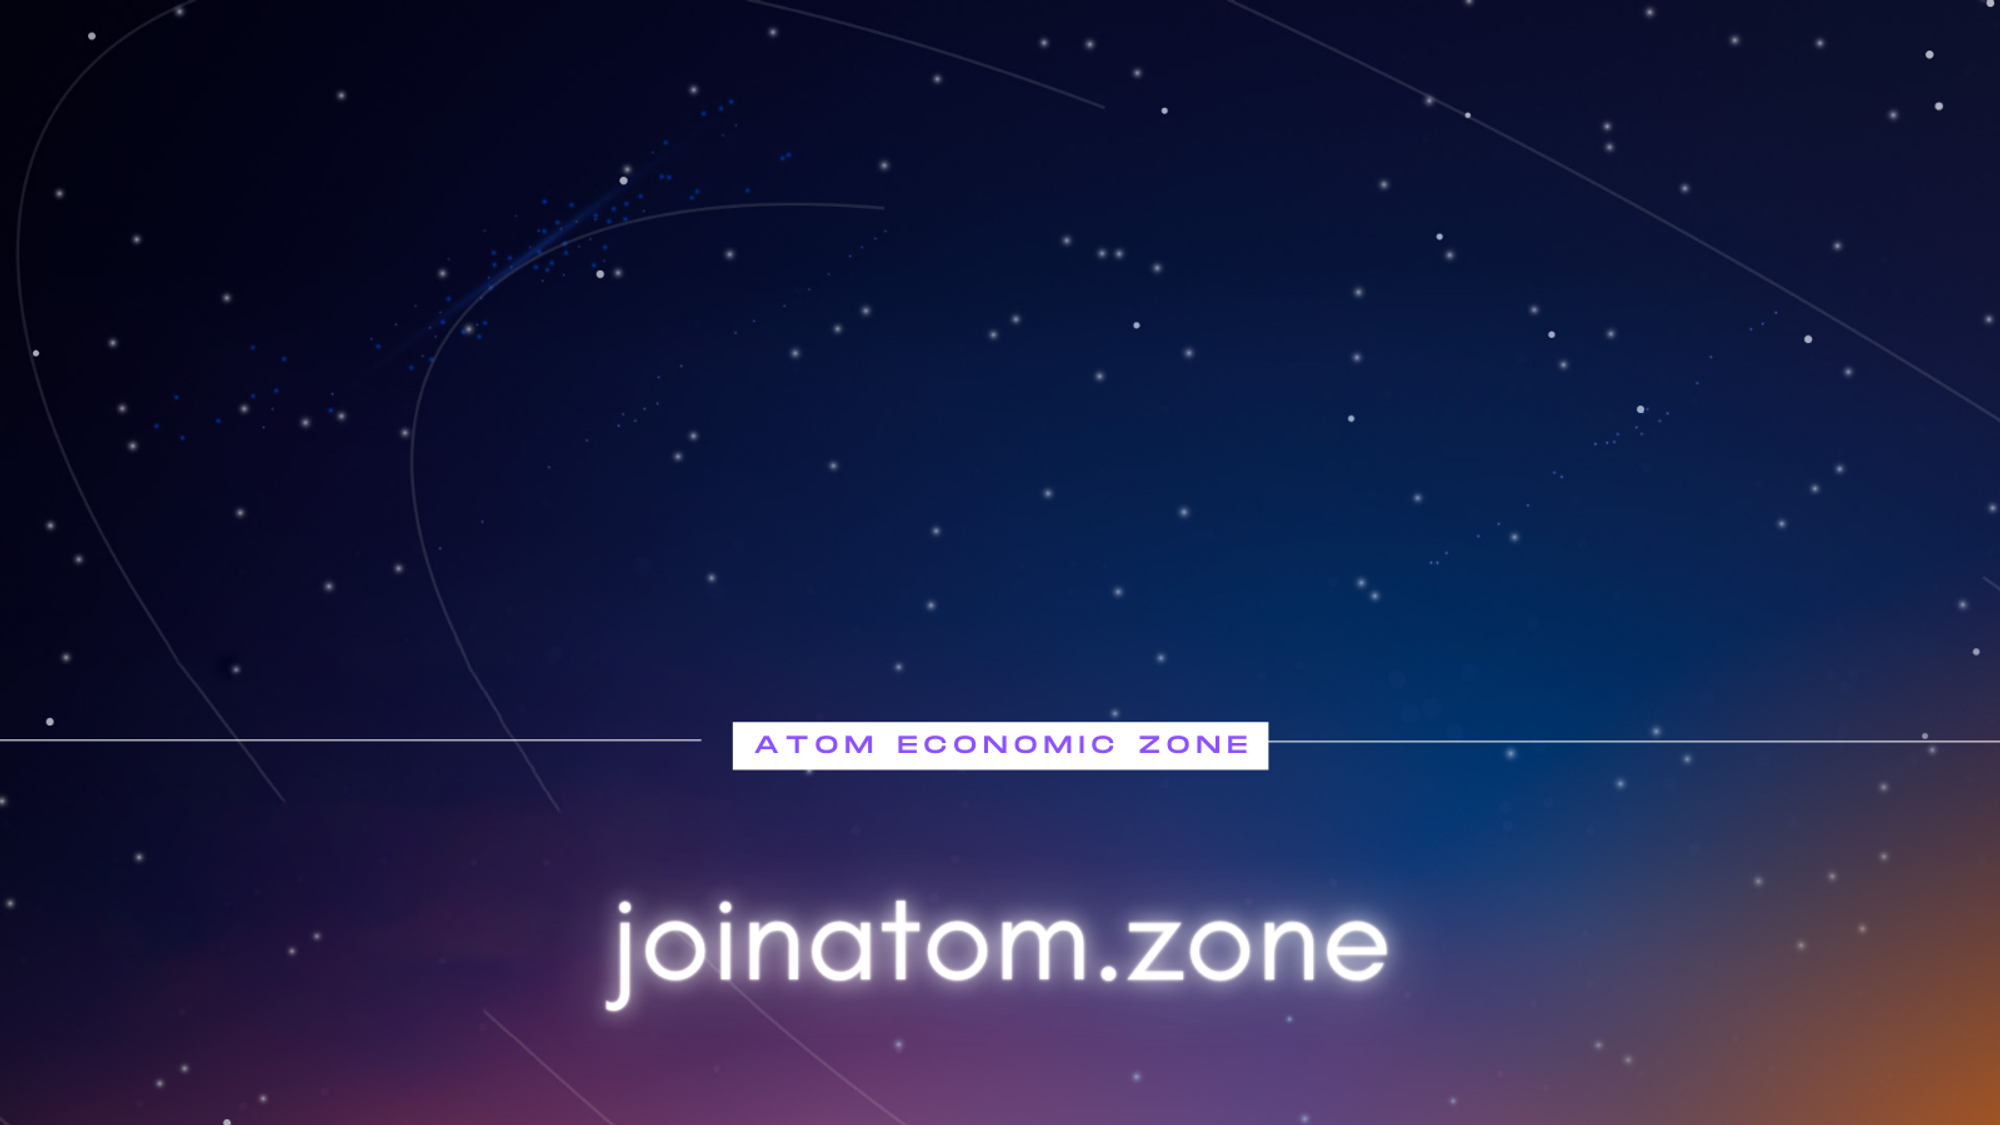 Atom Economic Zone (AEZ)